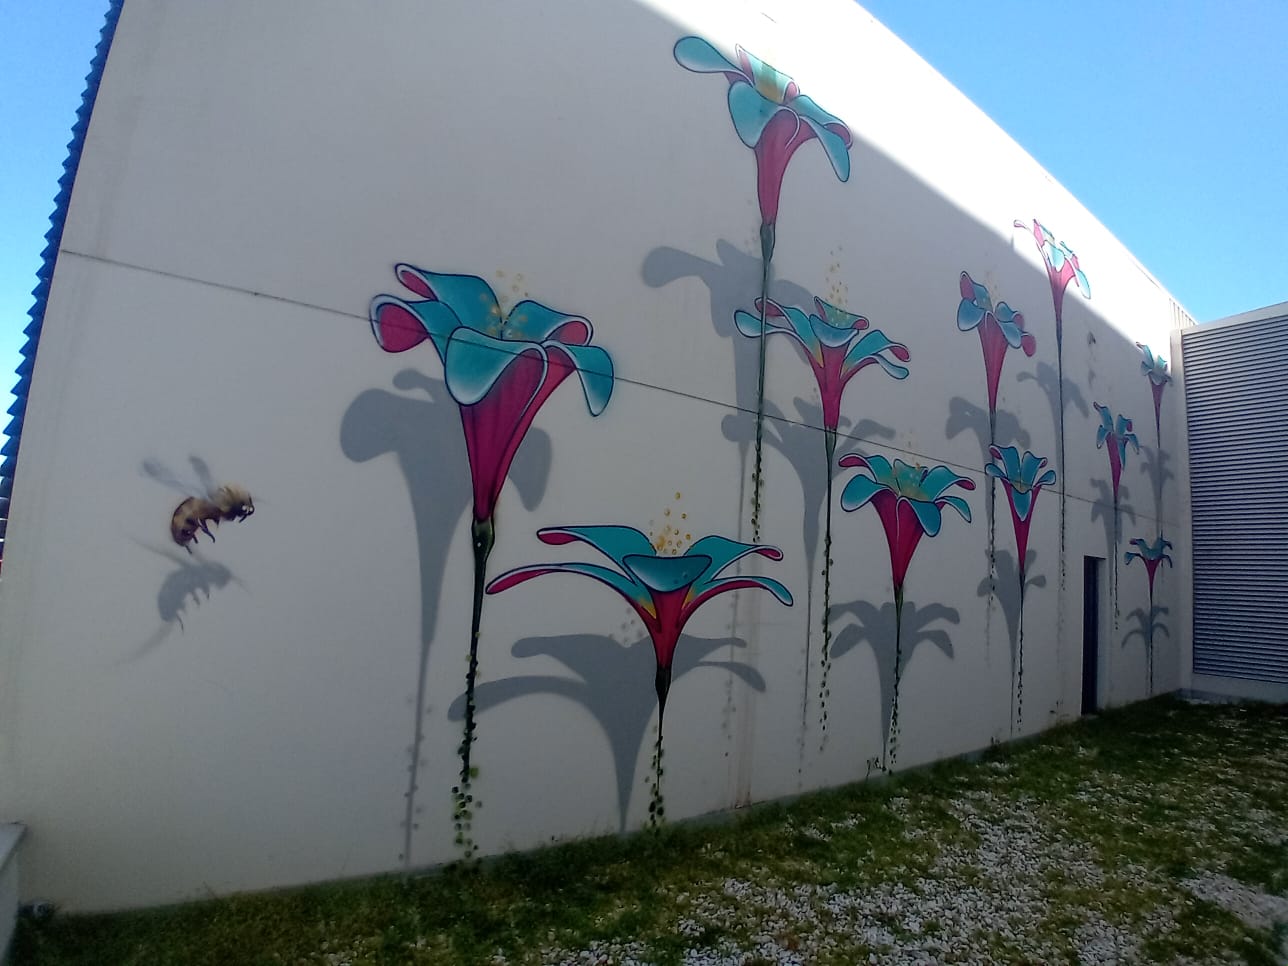 artista urbano internacional Werens decora las paredes internas del Hospital Quironsalud del Valles